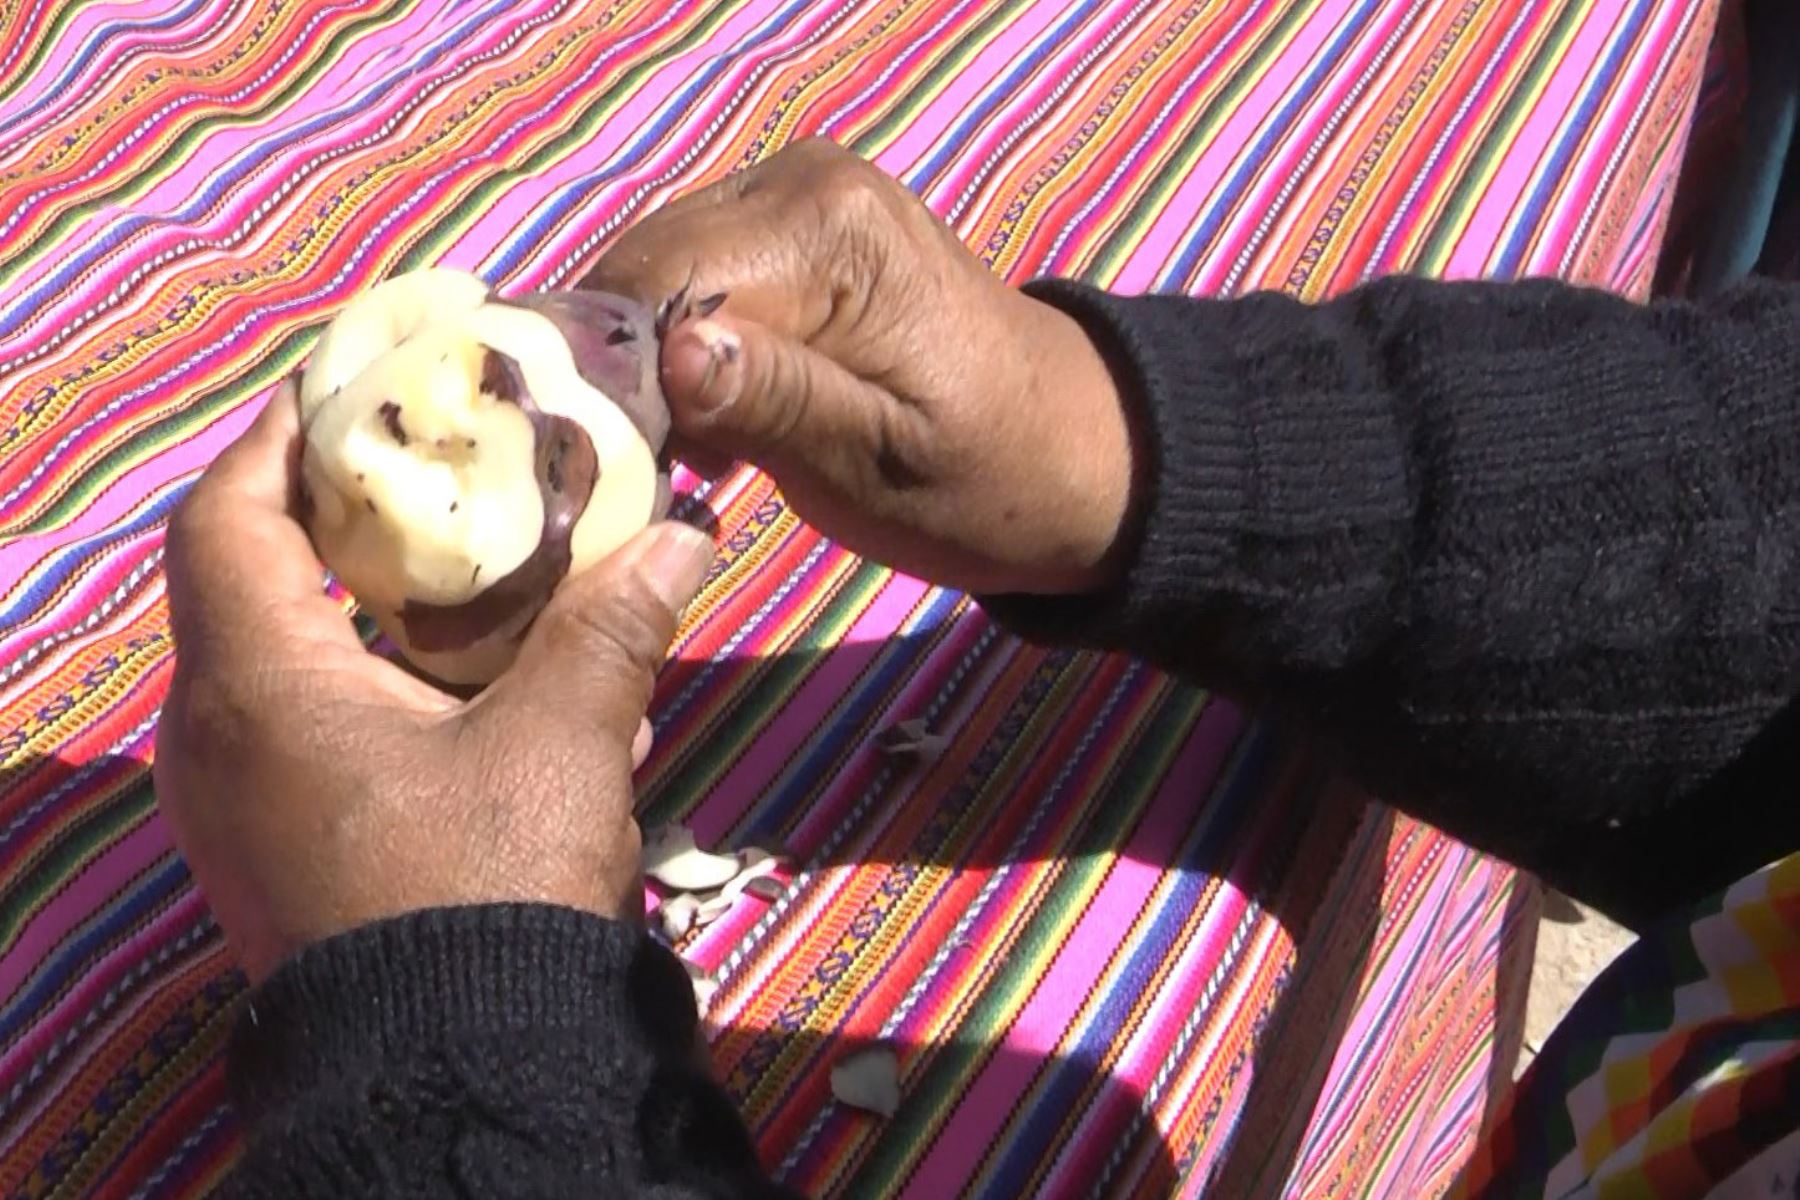 Municipio de Huancayo puso a llorar a nueras con singular concurso del pelado de papas